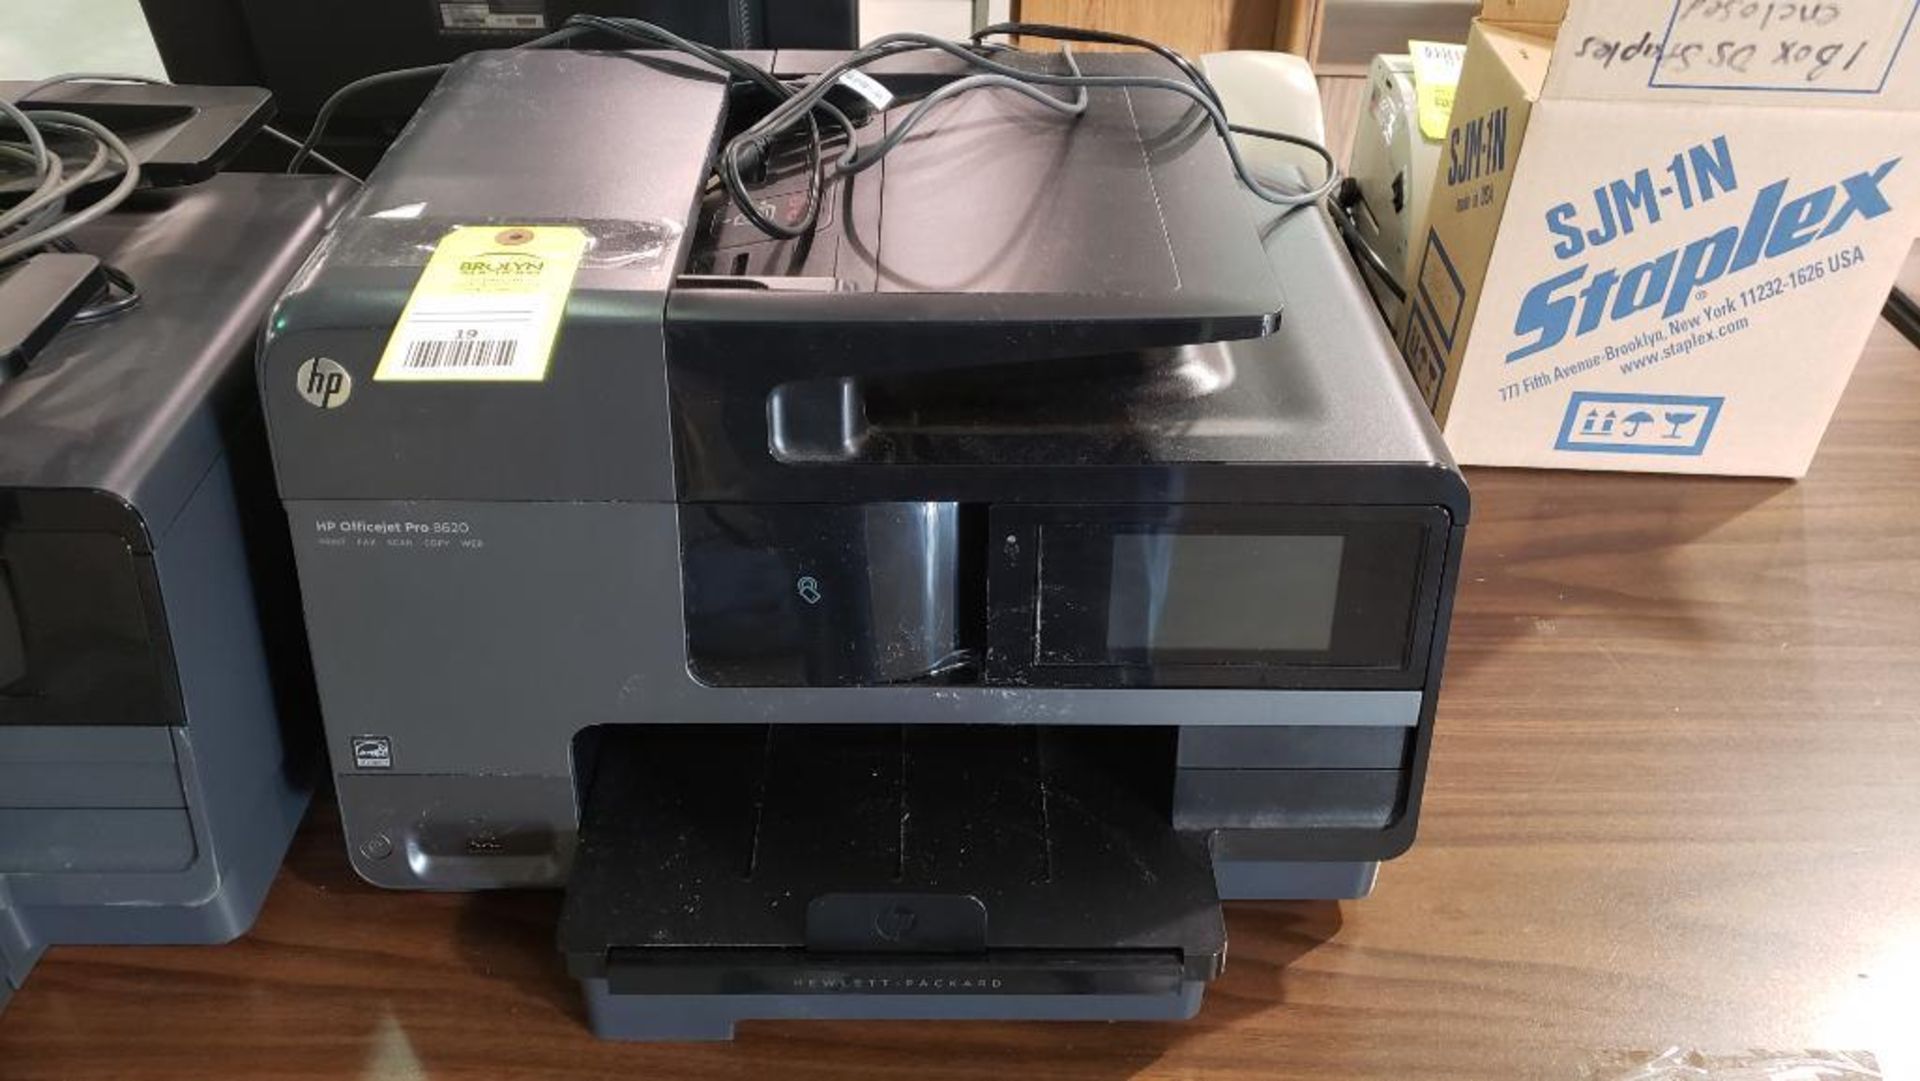 Hp officejet pro model 8620 all in one printer scanner copier.